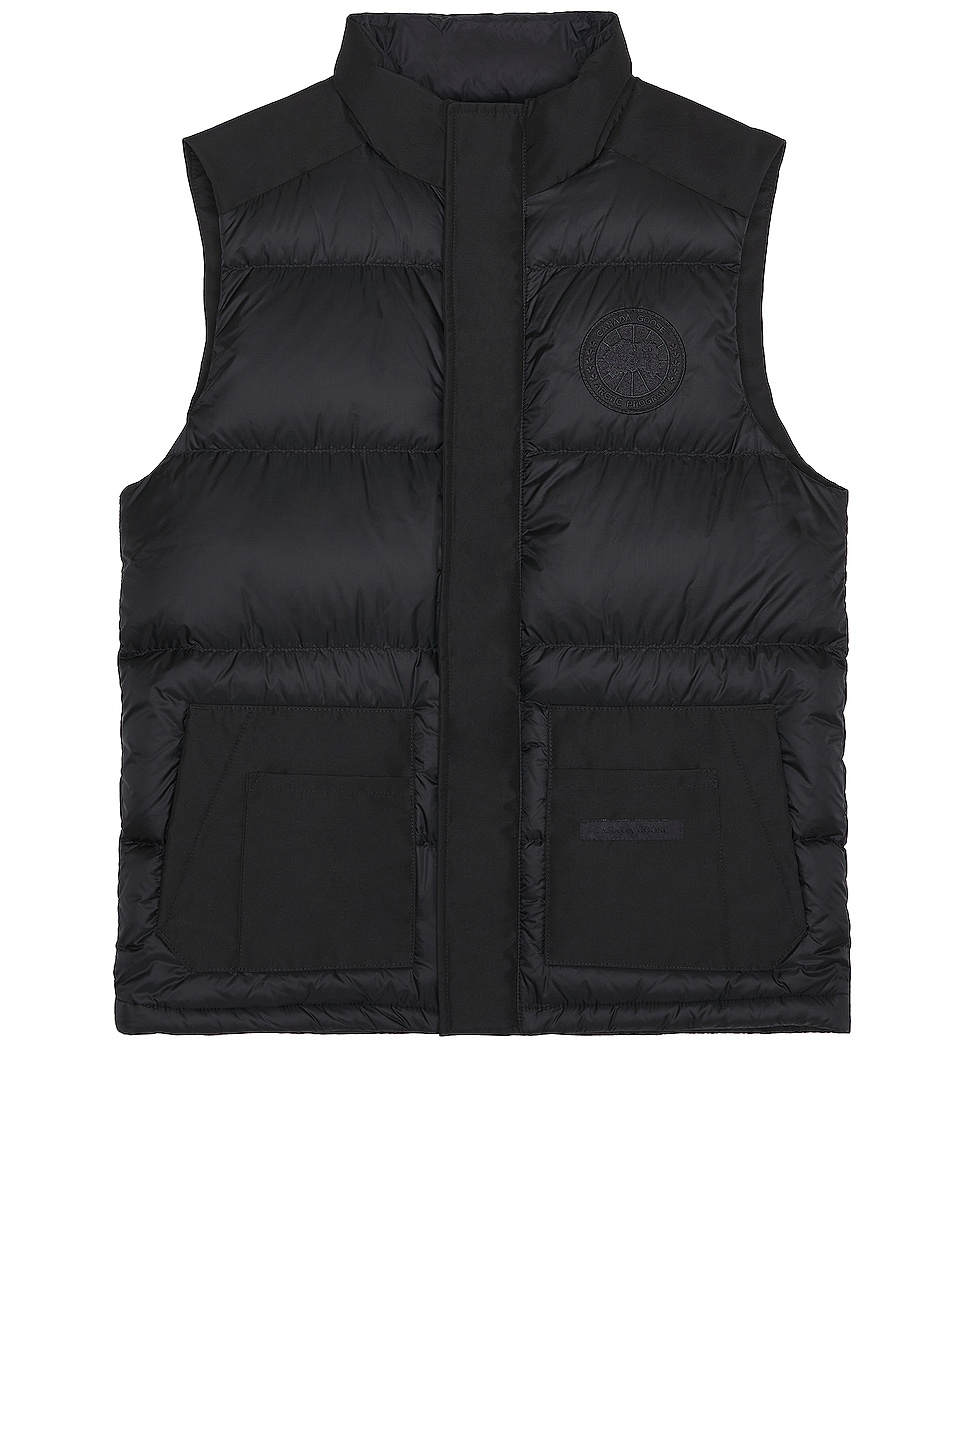 Image 1 of Canada Goose Paradigm Freestyle Vest in Black